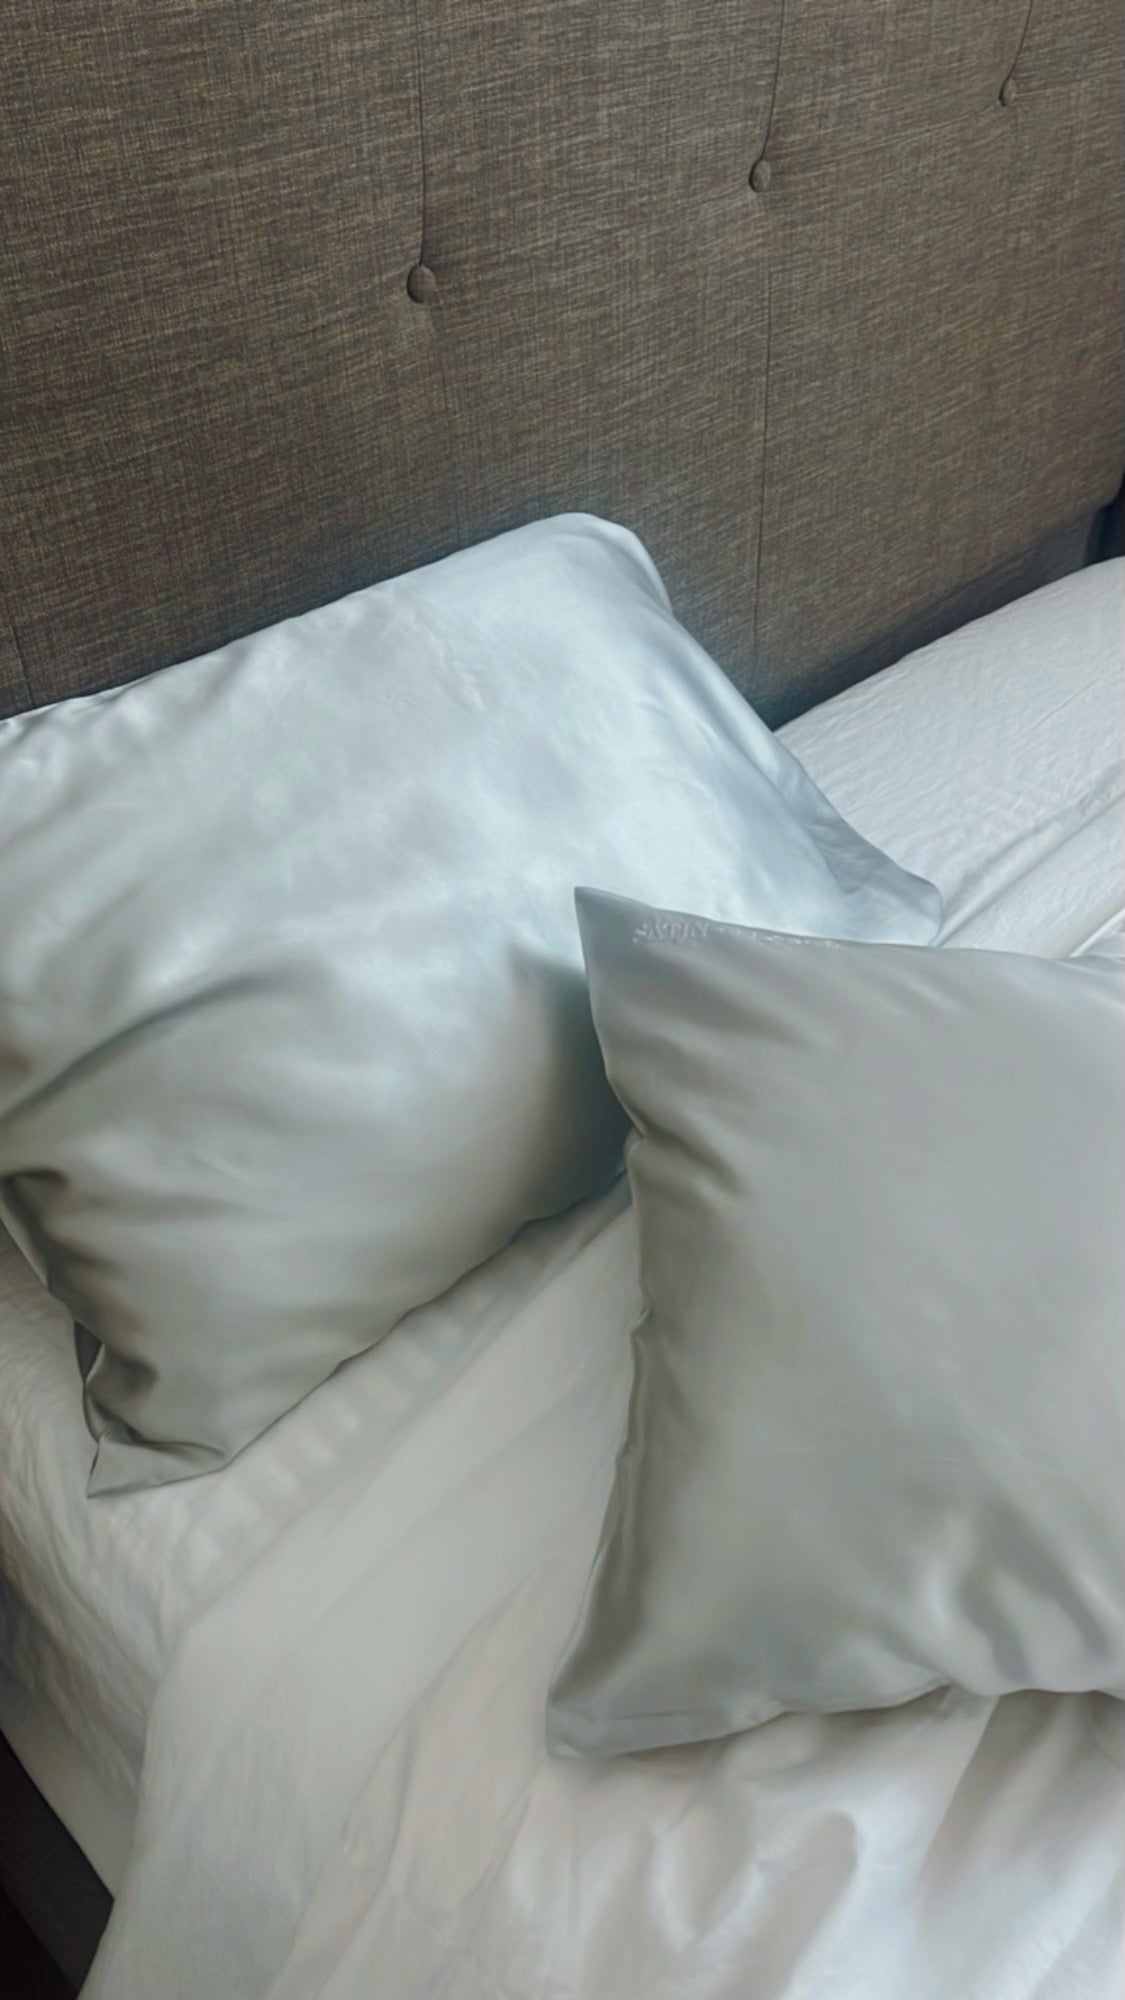 Adrianna Silk Pillowcase